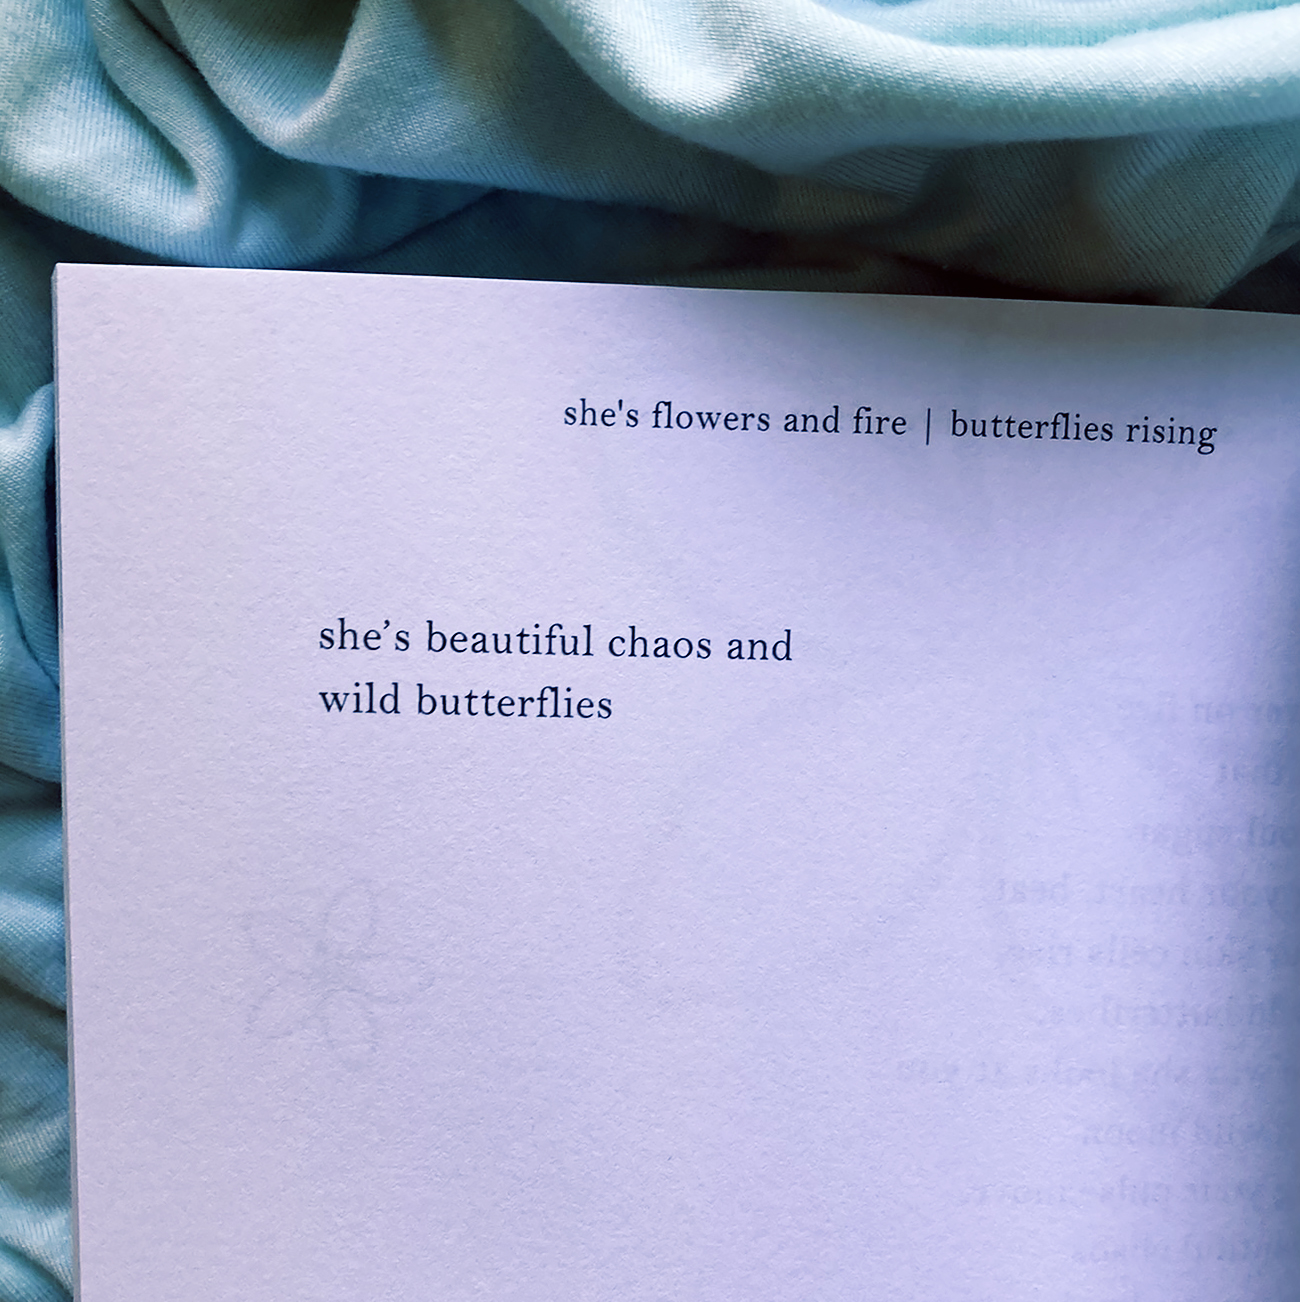 she's beautiful chaos and wild butterflies. - butterflies rising